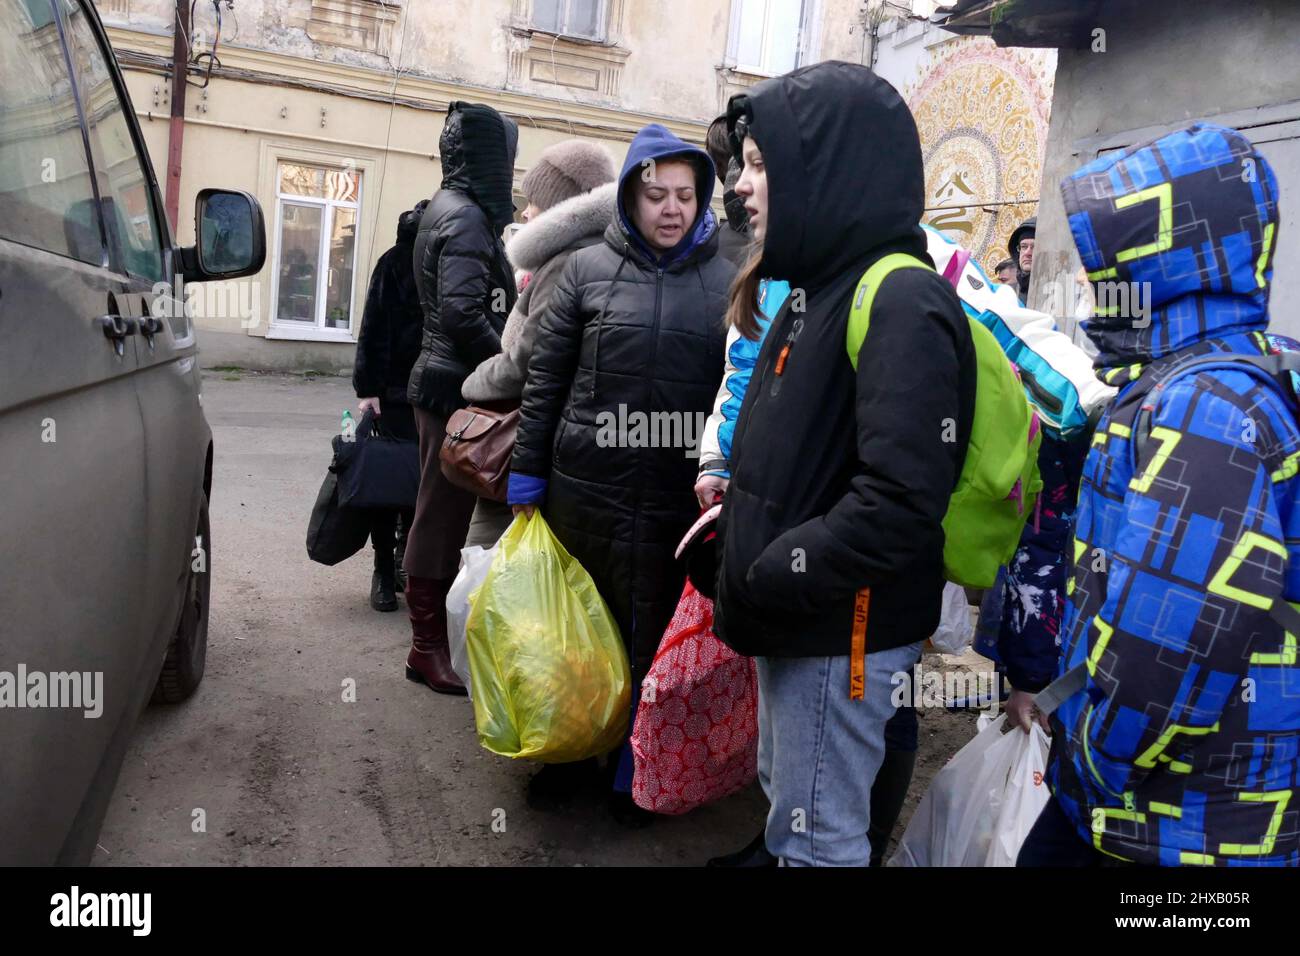 ODESA, UKRAINE - 10. MÄRZ 2022 - Menschen, die vor der russischen Invasion fliehen, sind in der Nähe eines kostenlosen Evakuierungsbusses versammelt, der sie zur Grenze bringen soll Stockfoto